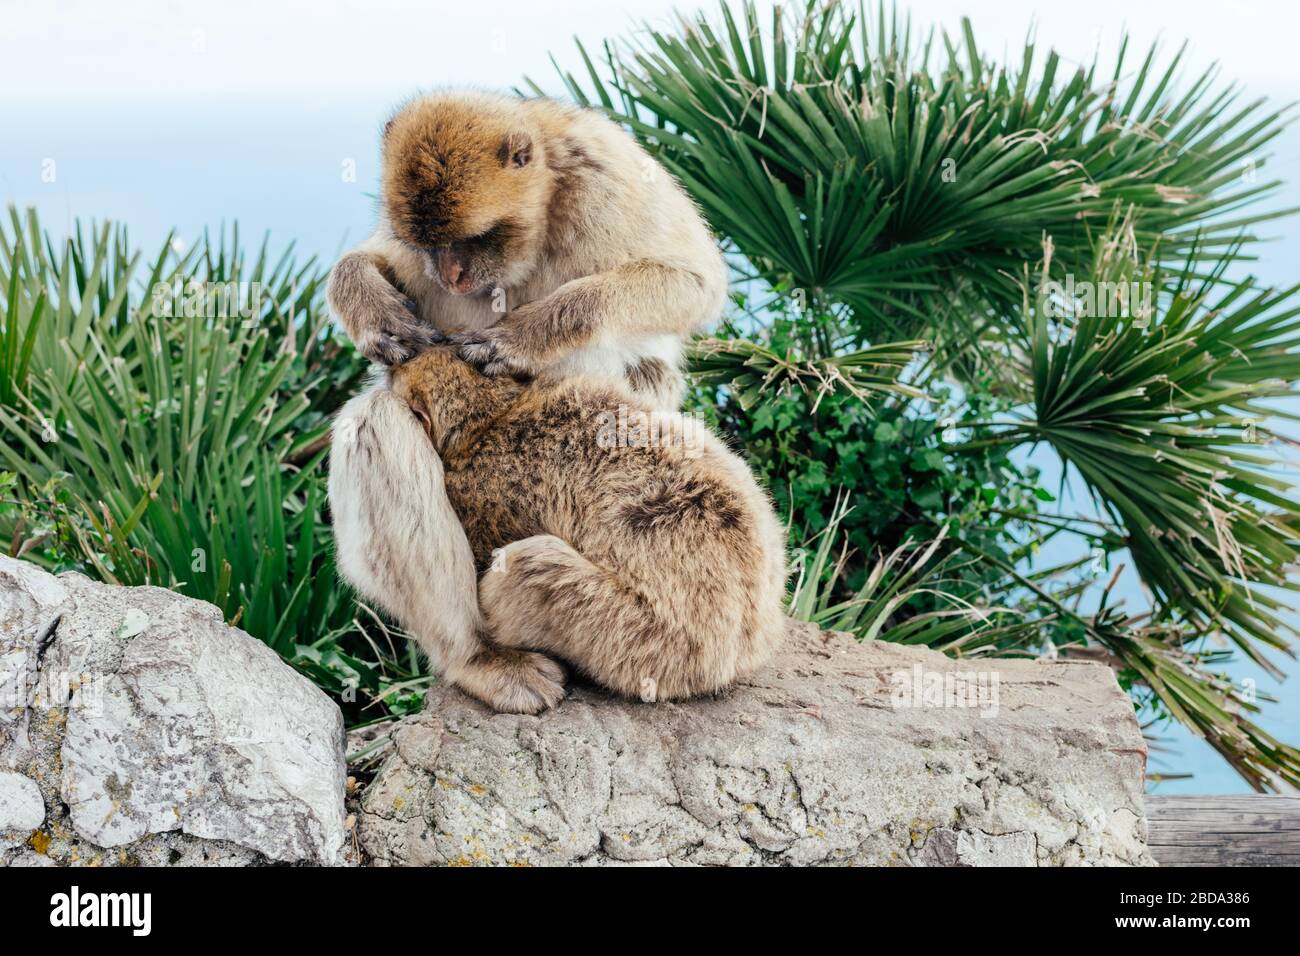 Vue de deux singes sauvages comme barbary Macaque se toilettant l'un l'autre au sommet du Rocher de Gibraltar. Colonie britannique Gibraltar. Banque D'Images